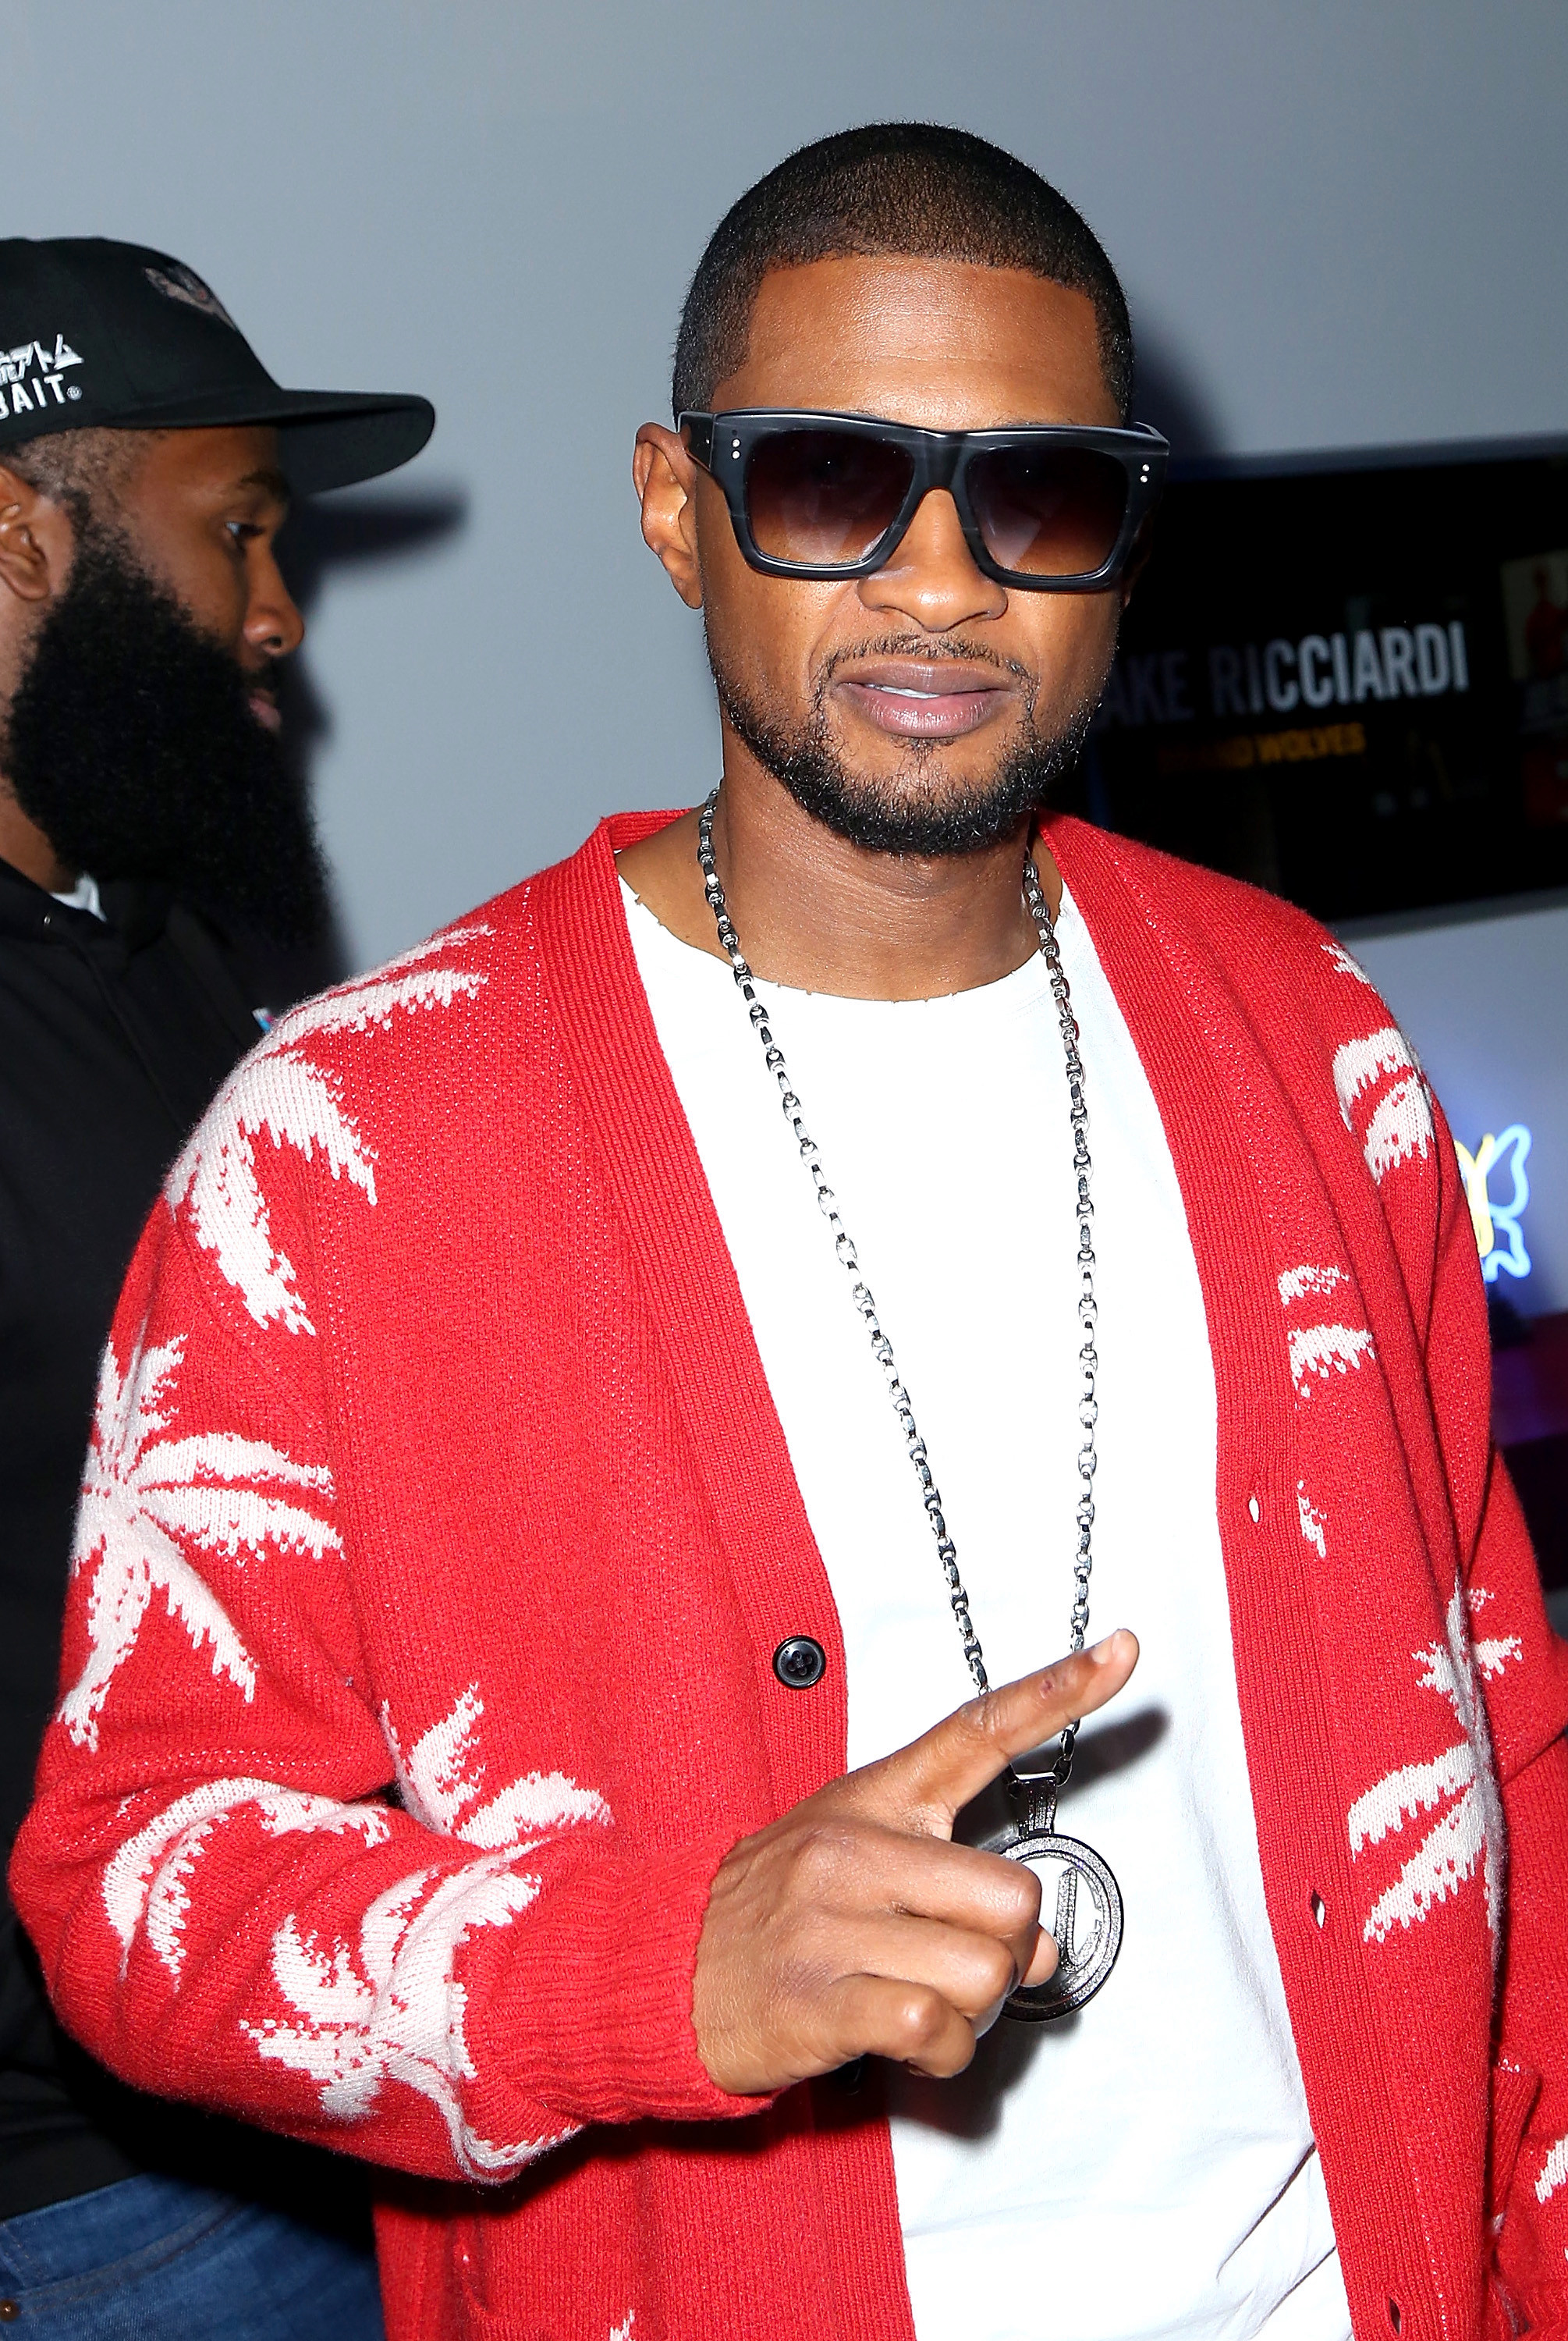  Singer Usher juga membagikan pernyataan palsu itu